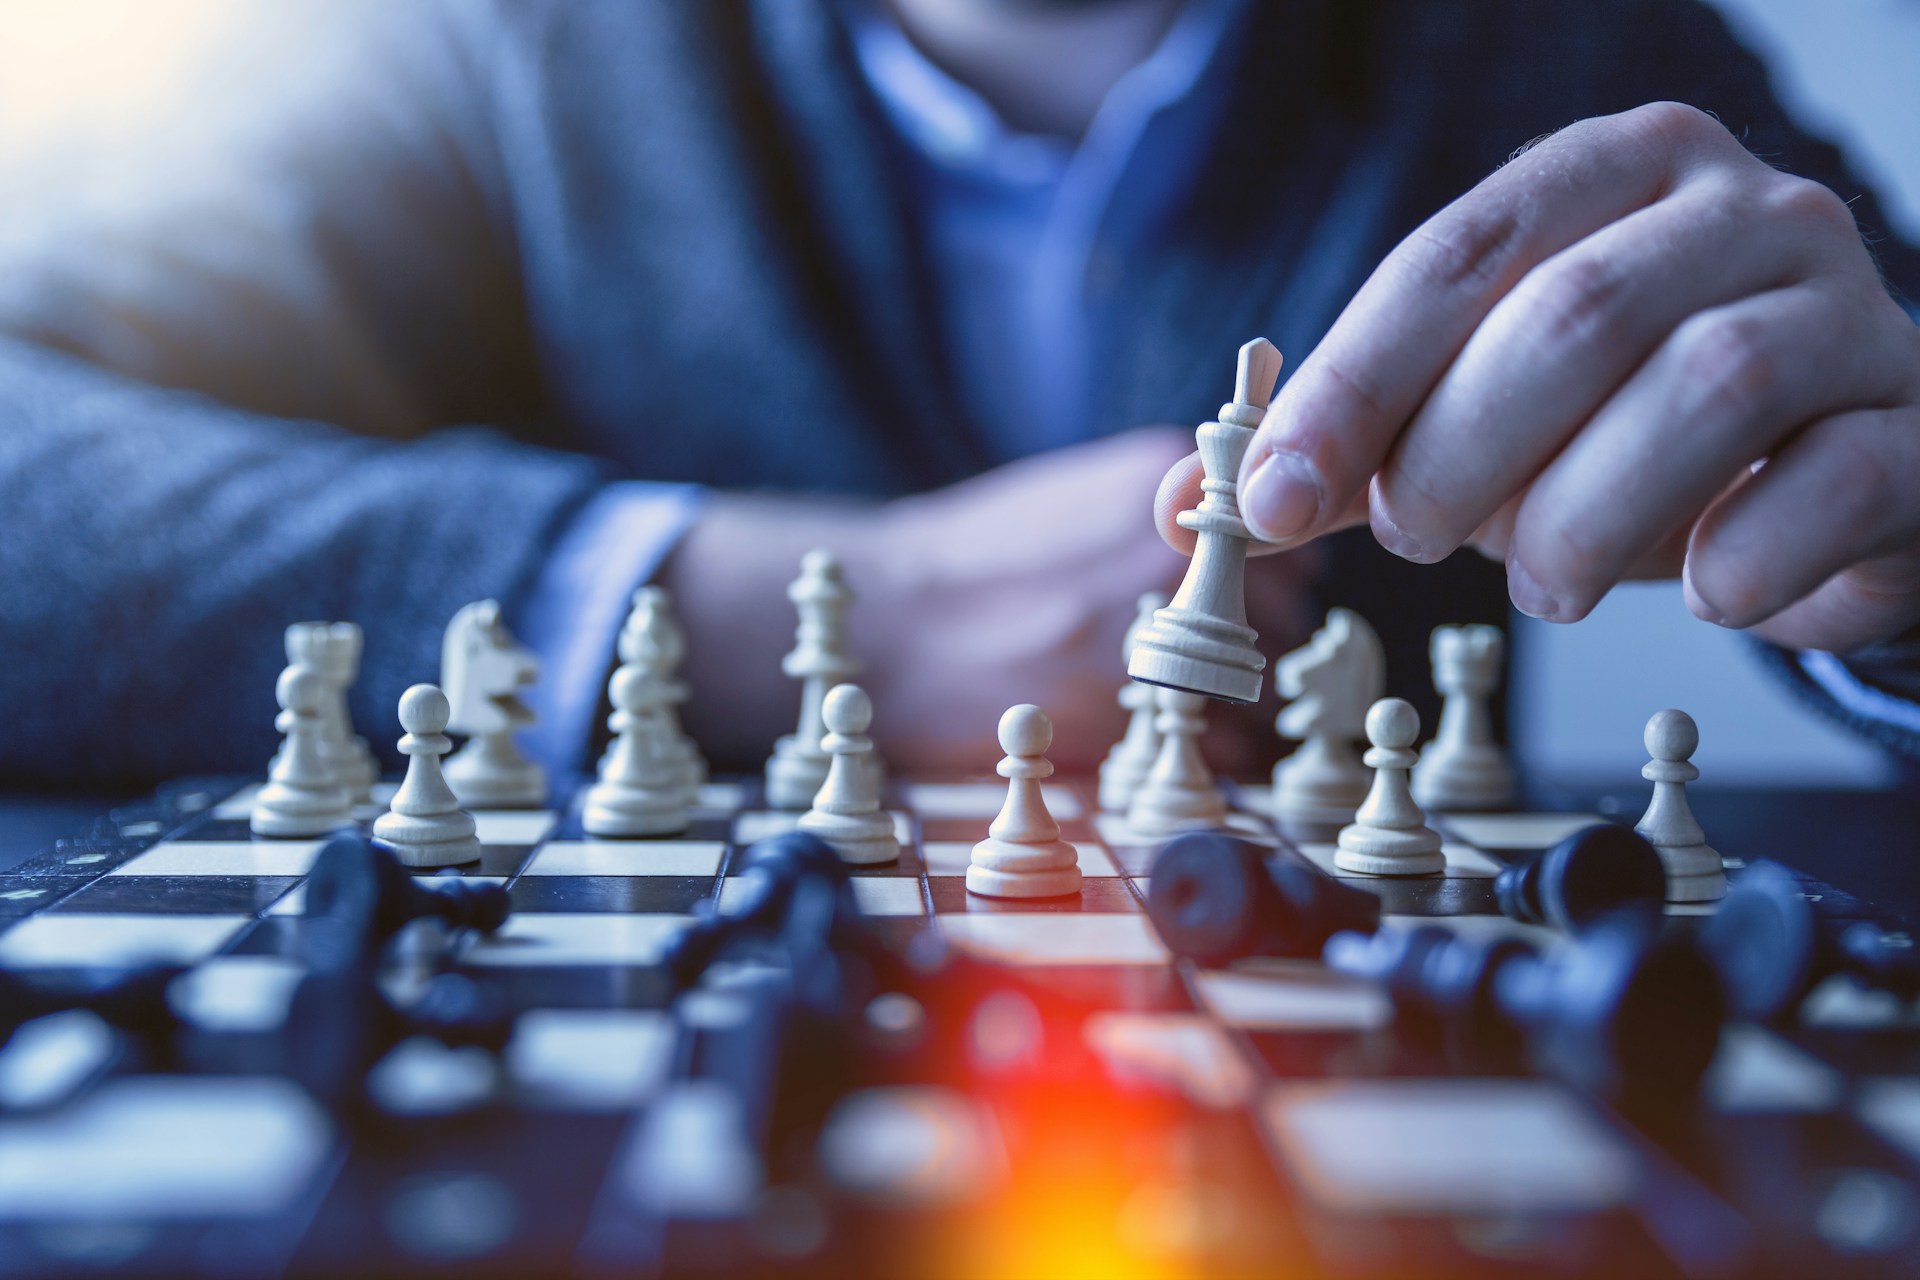 Desarrollar la capacidad de confiar en la intuición es clave para los expertos en ajedrez.